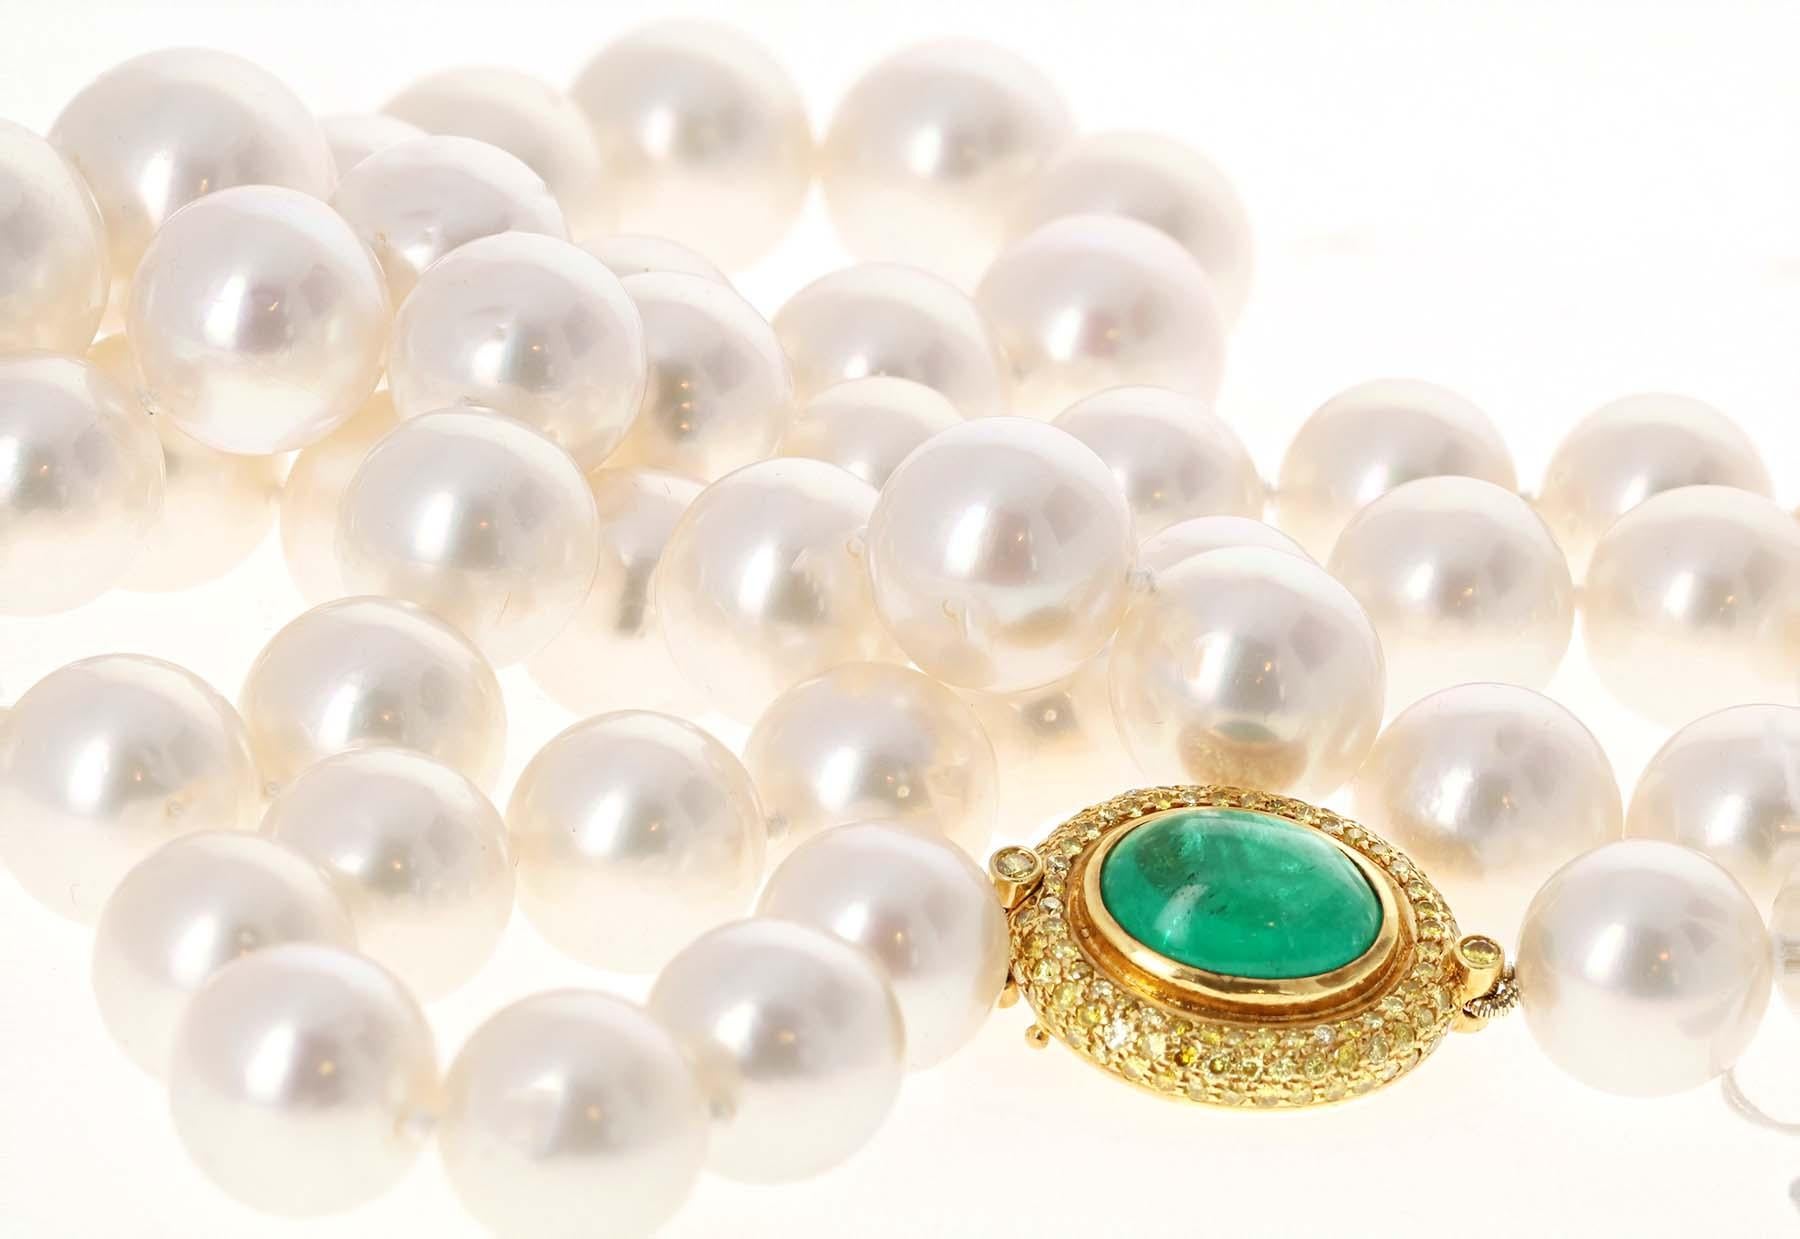 Ce collier de perles des mers du Sud comprend 59 perles lustrées avec une belle nacre et des piqûres minimes. Les perles lustrées ont une taille de 12 à 16 millimètres. La perle centrale est d'une taille parfaite de 16 millimètres. Élégamment